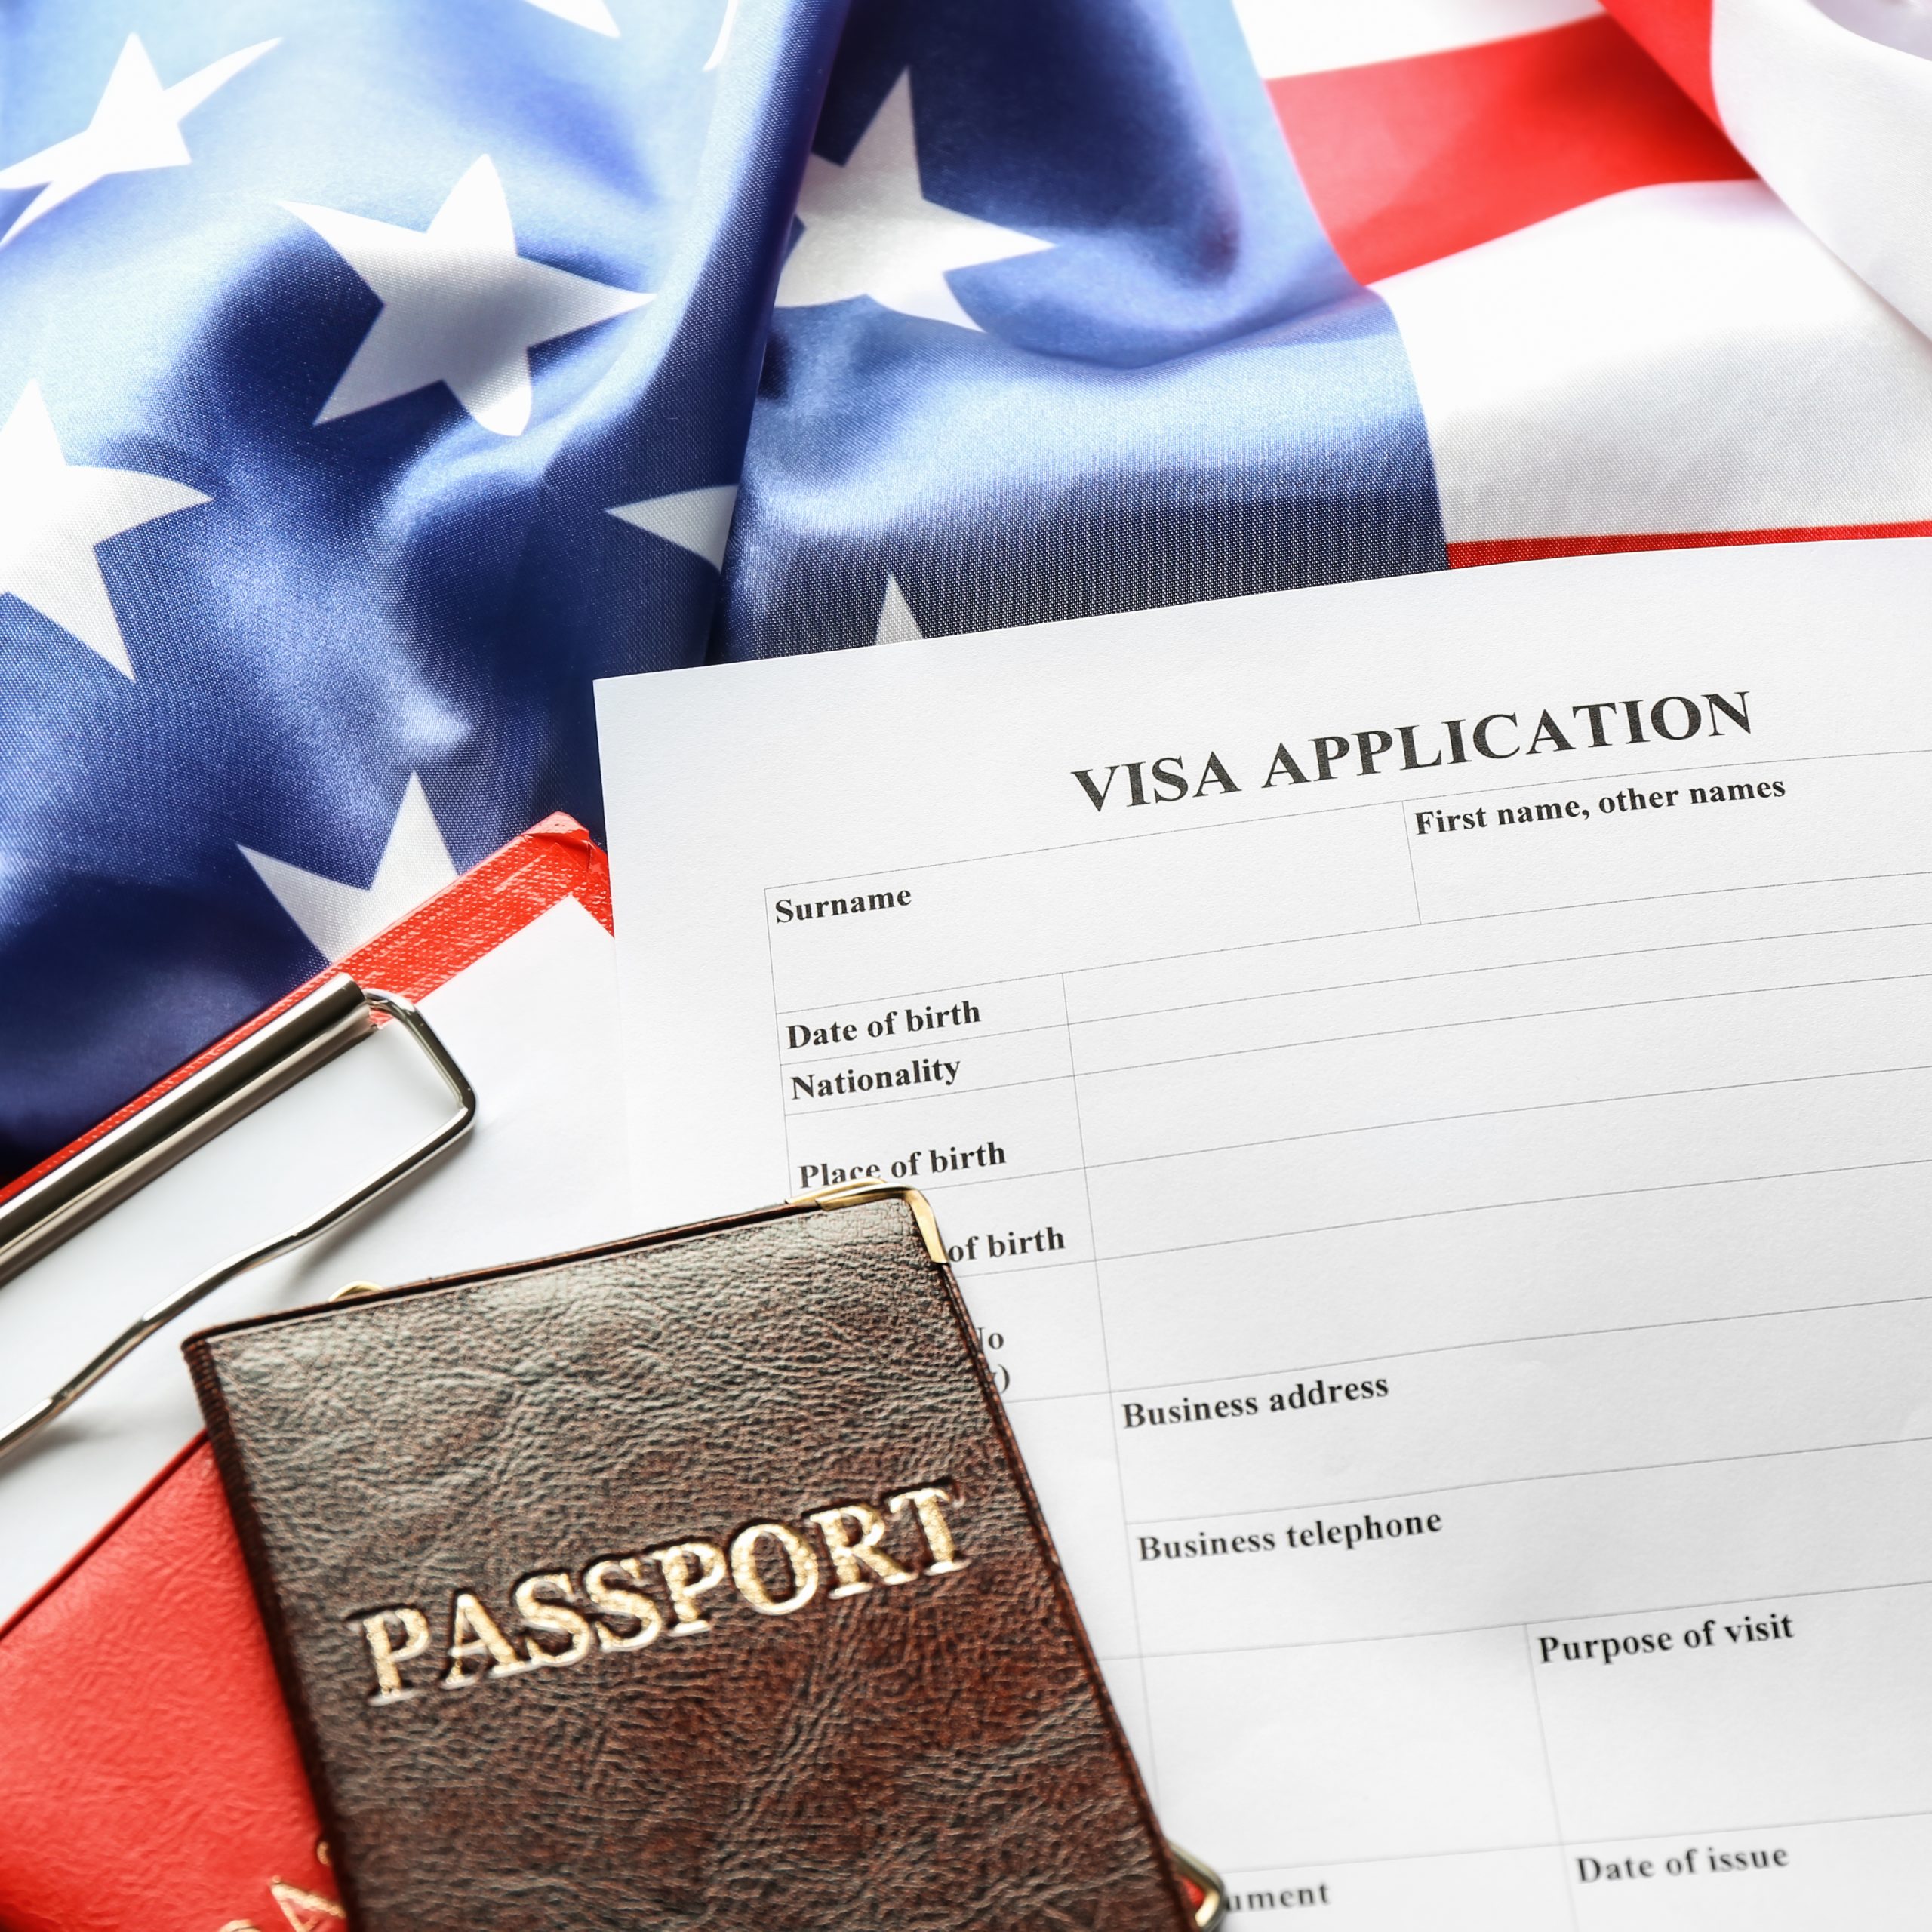 أهم المعلومات للحصول علي تأشيرة زيارة الولايات المتحدة الأمريكية